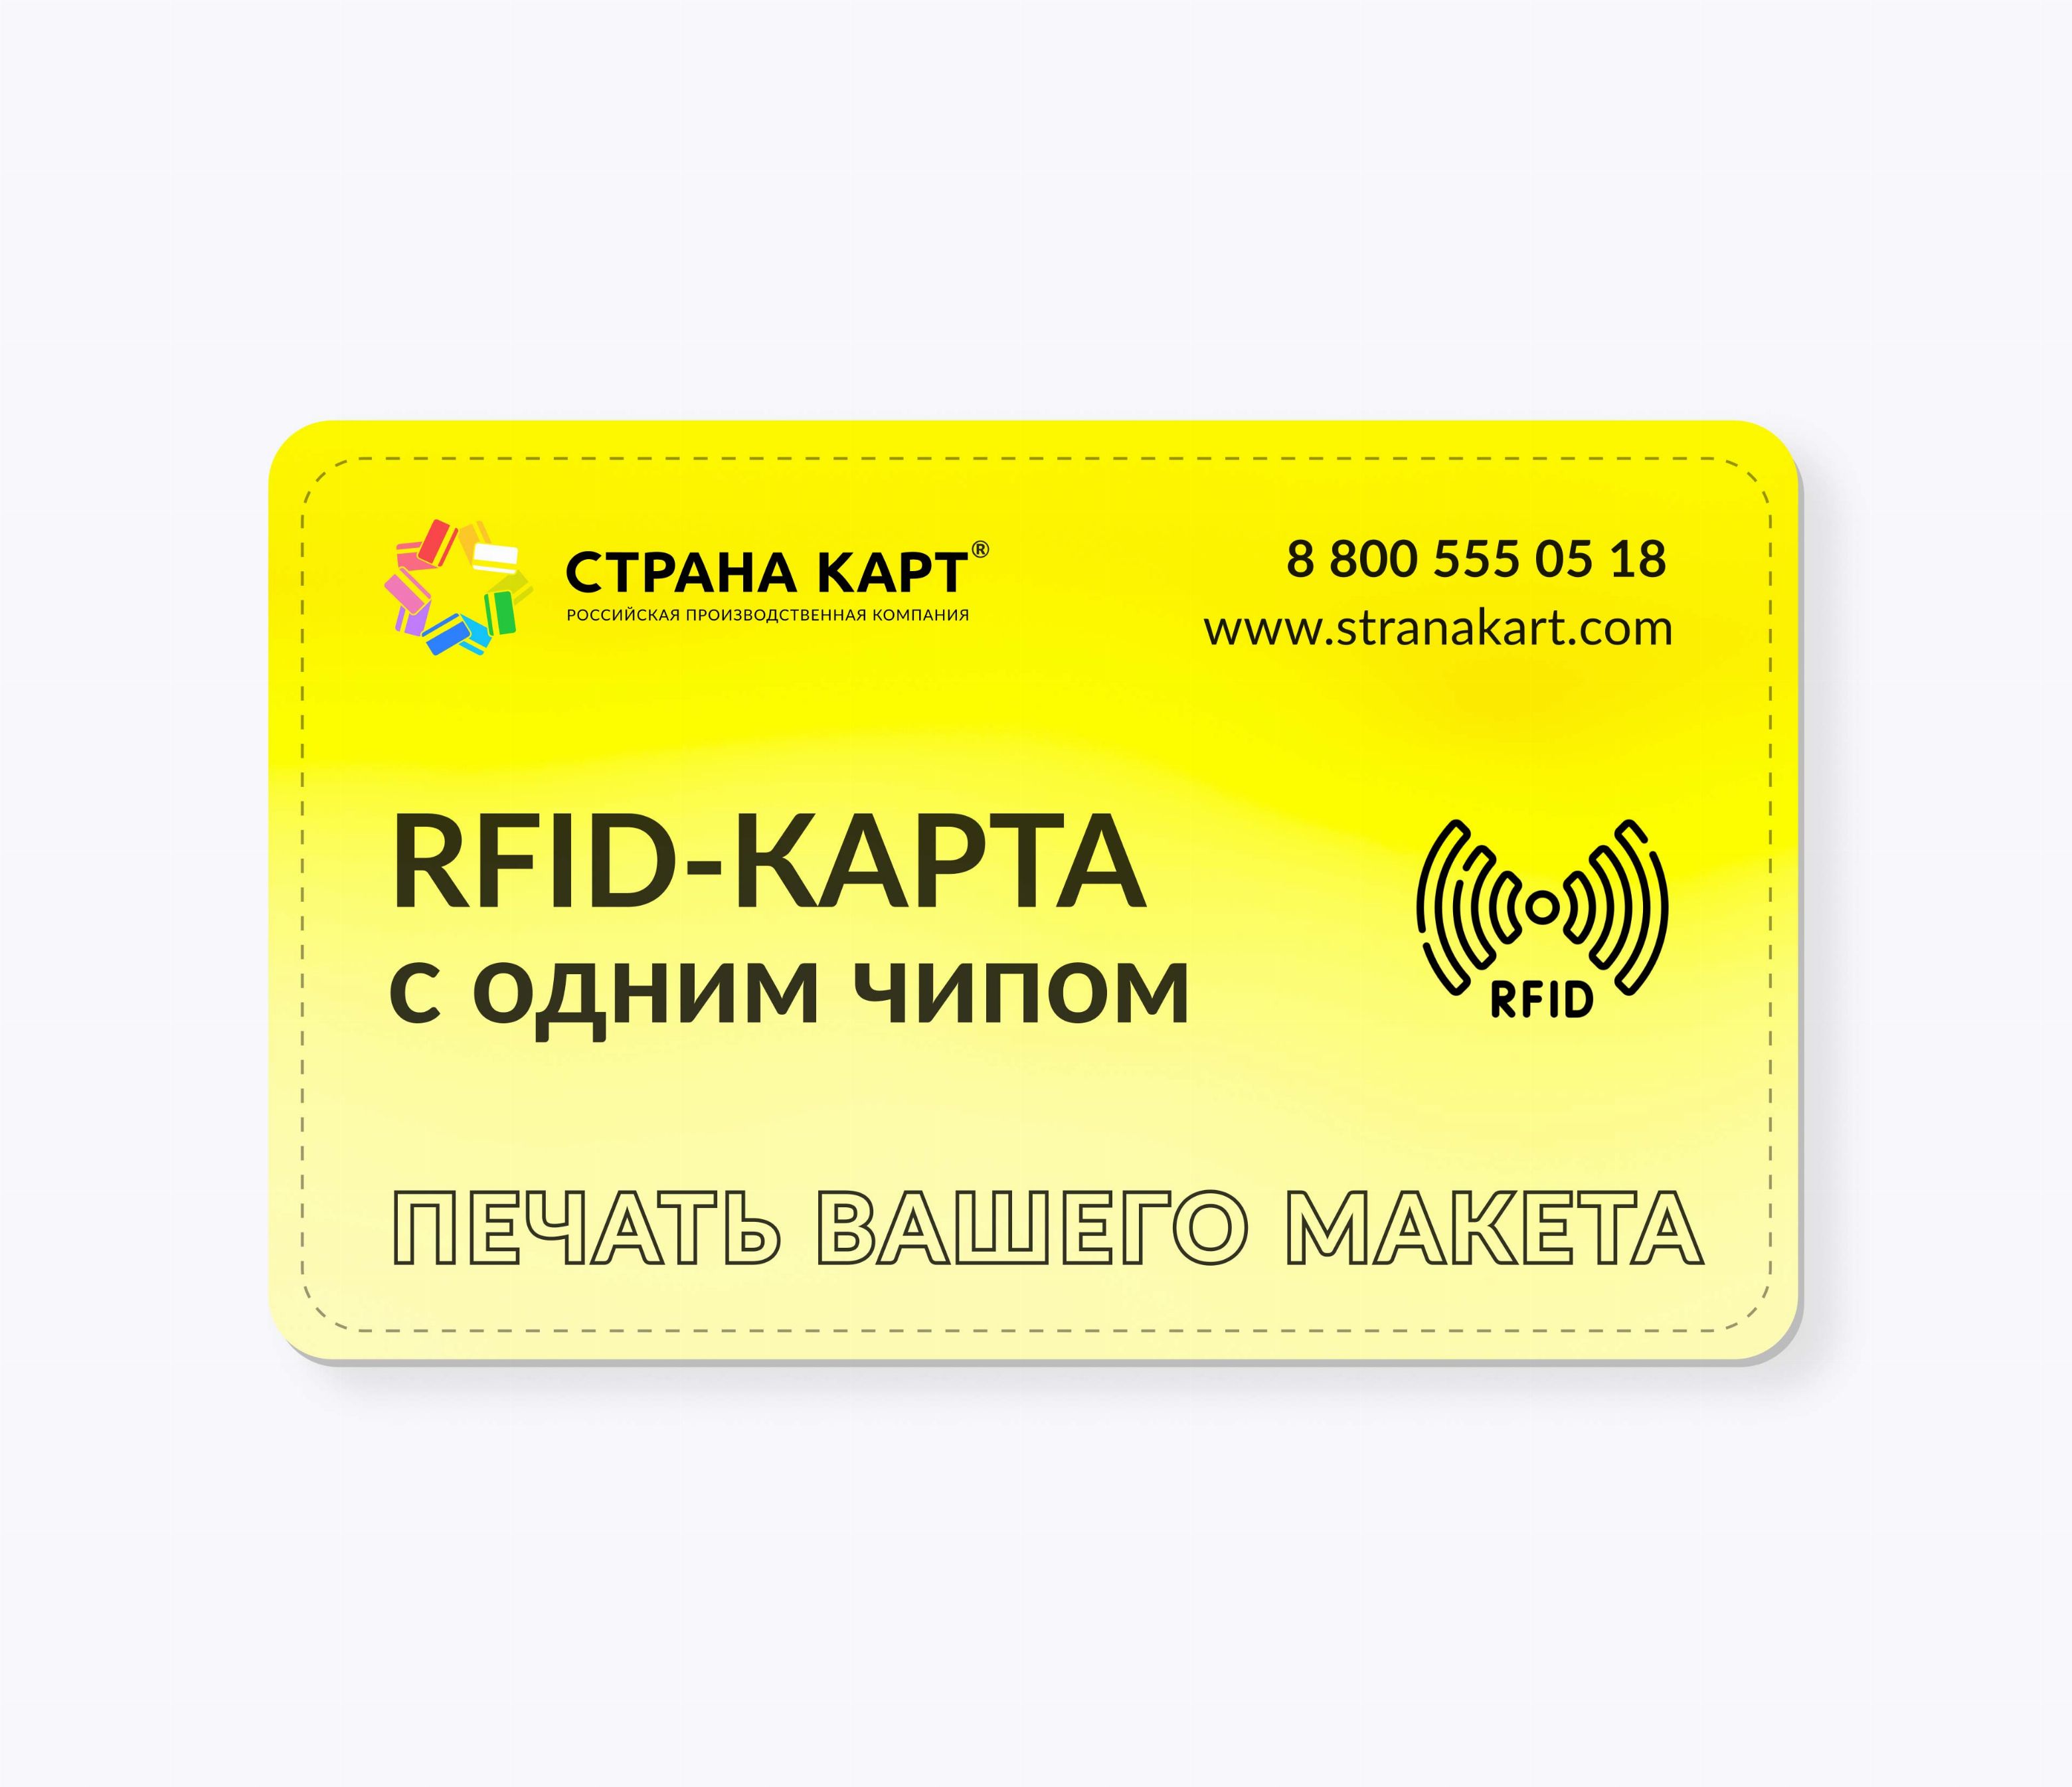 RFID-карты с чипом SMARTTAG® 1k 7 byte UID печать вашего макета RFID-карты с чипом SMARTTAG® 1k 7 byte UID